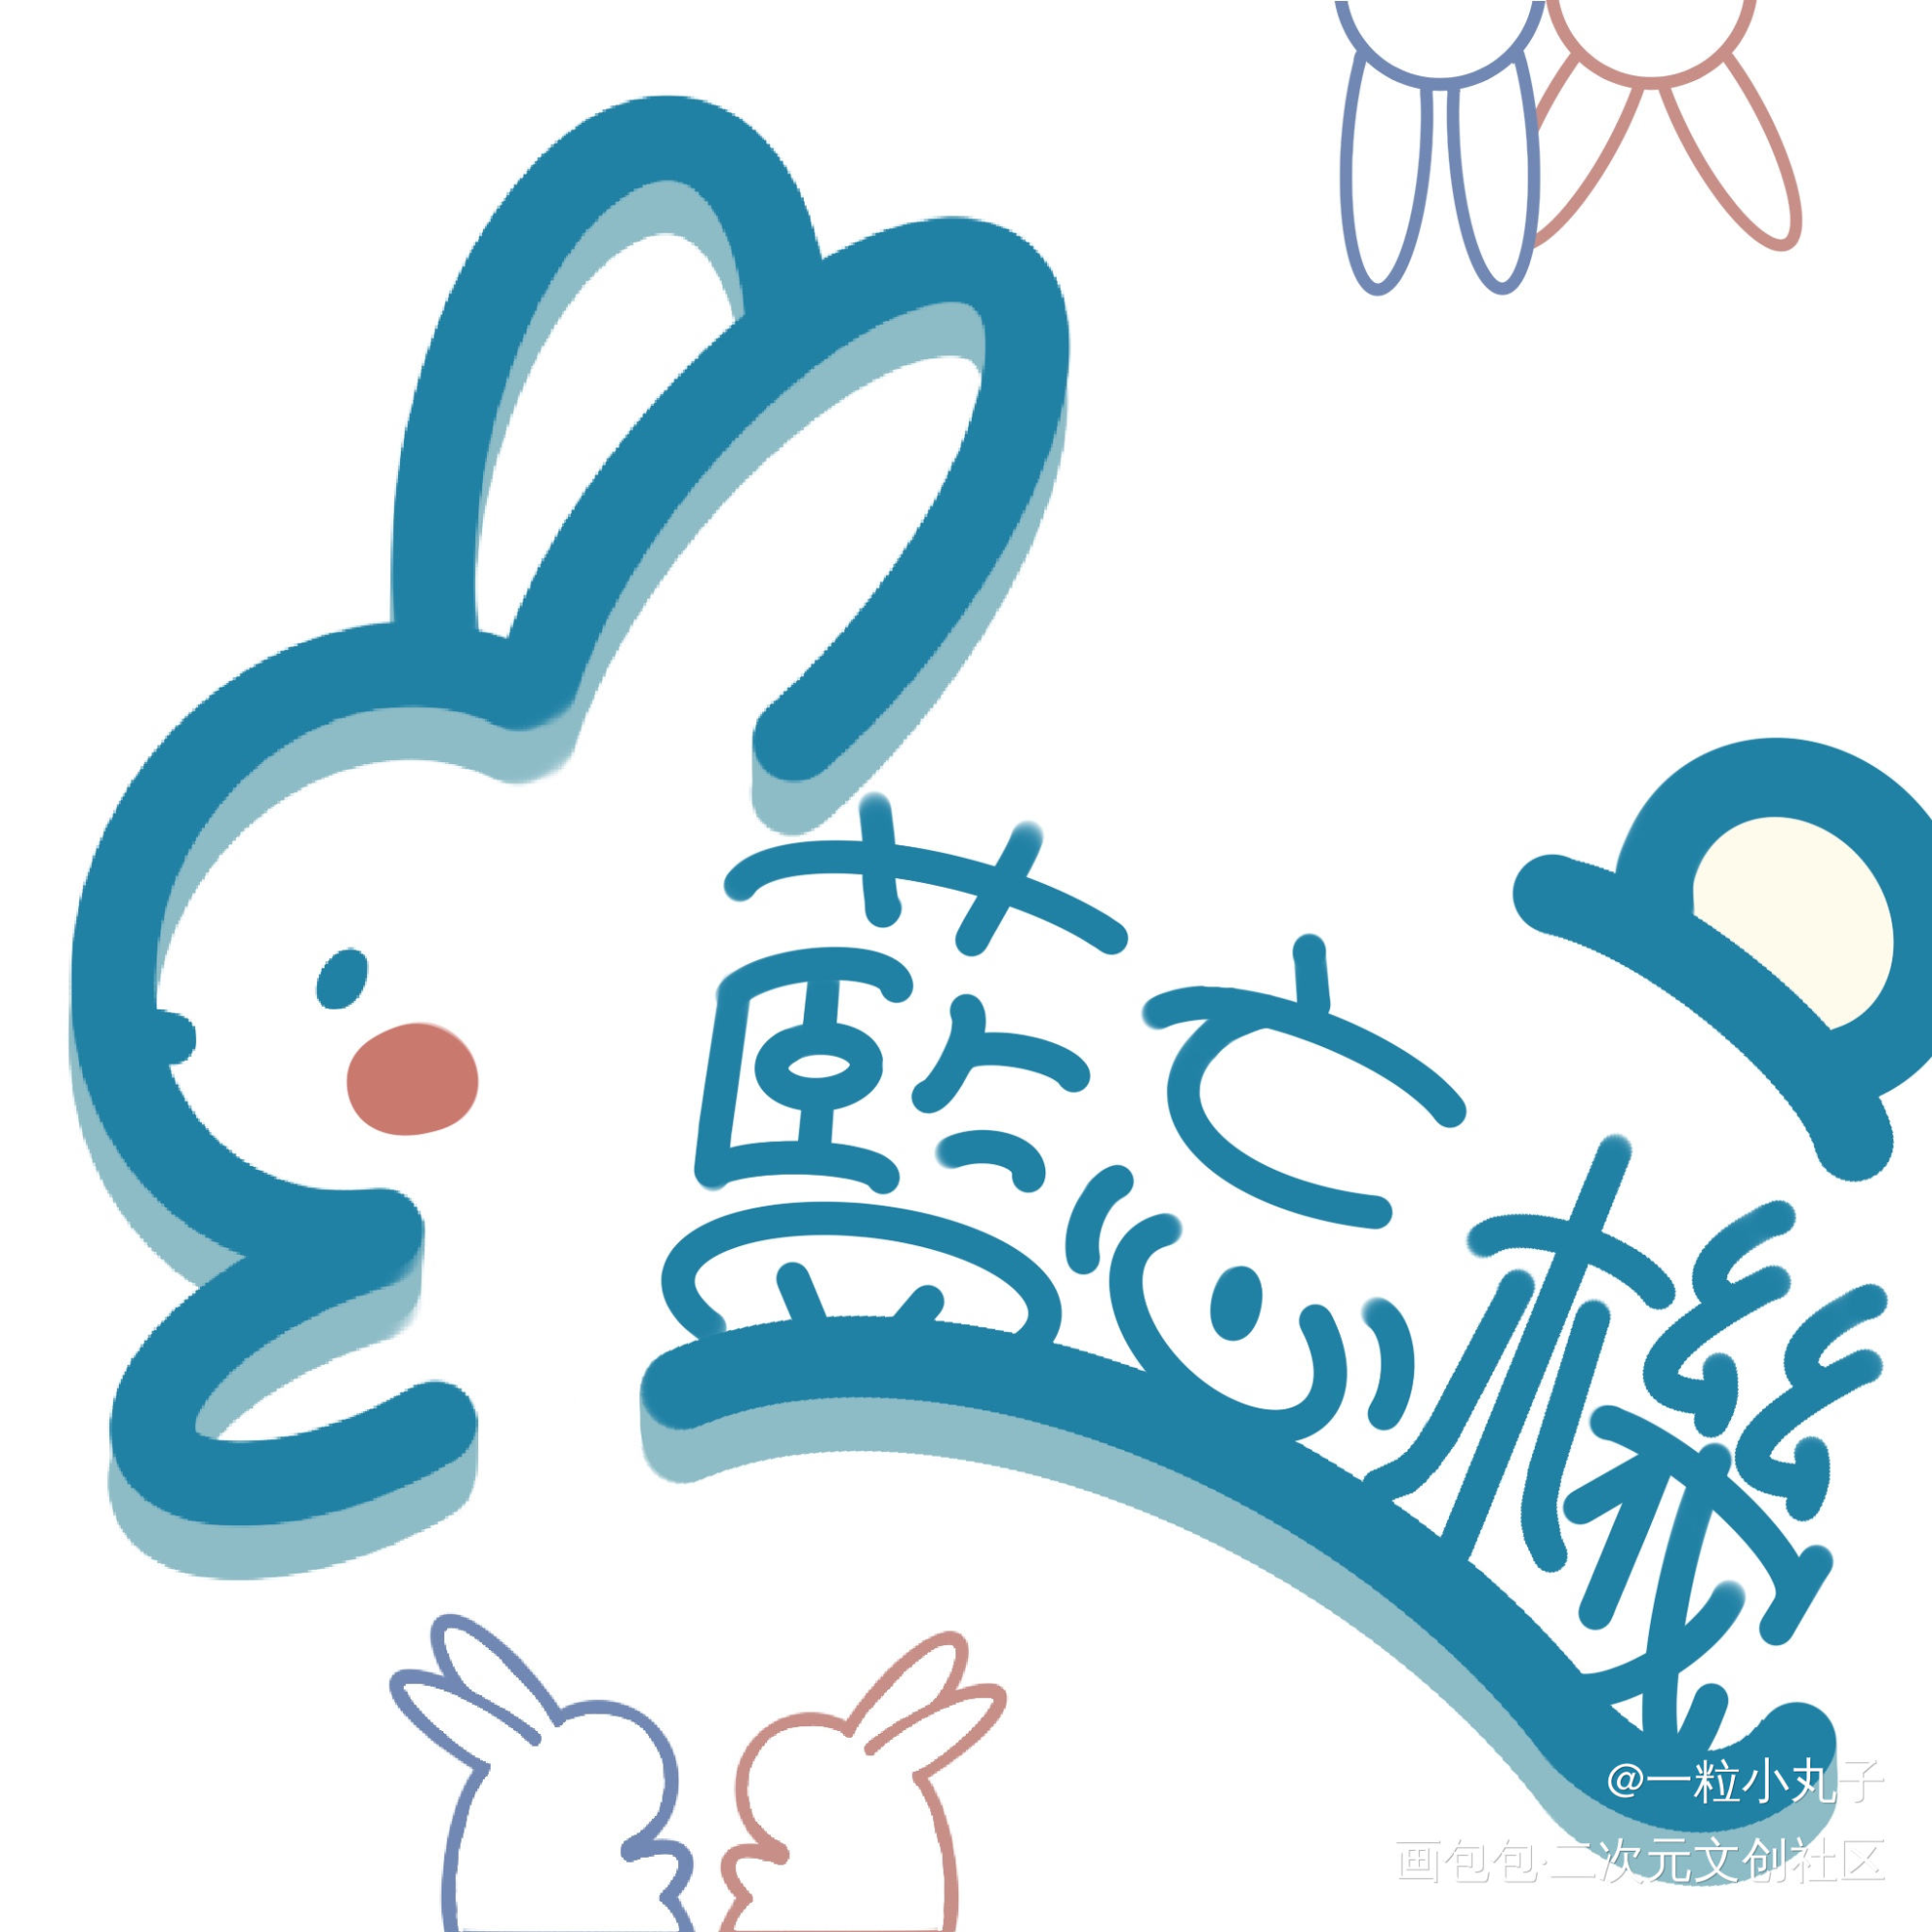 「第一只兔子」_魔道祖师忘羡我要上首推字体设计见字如晤板写绘画作品